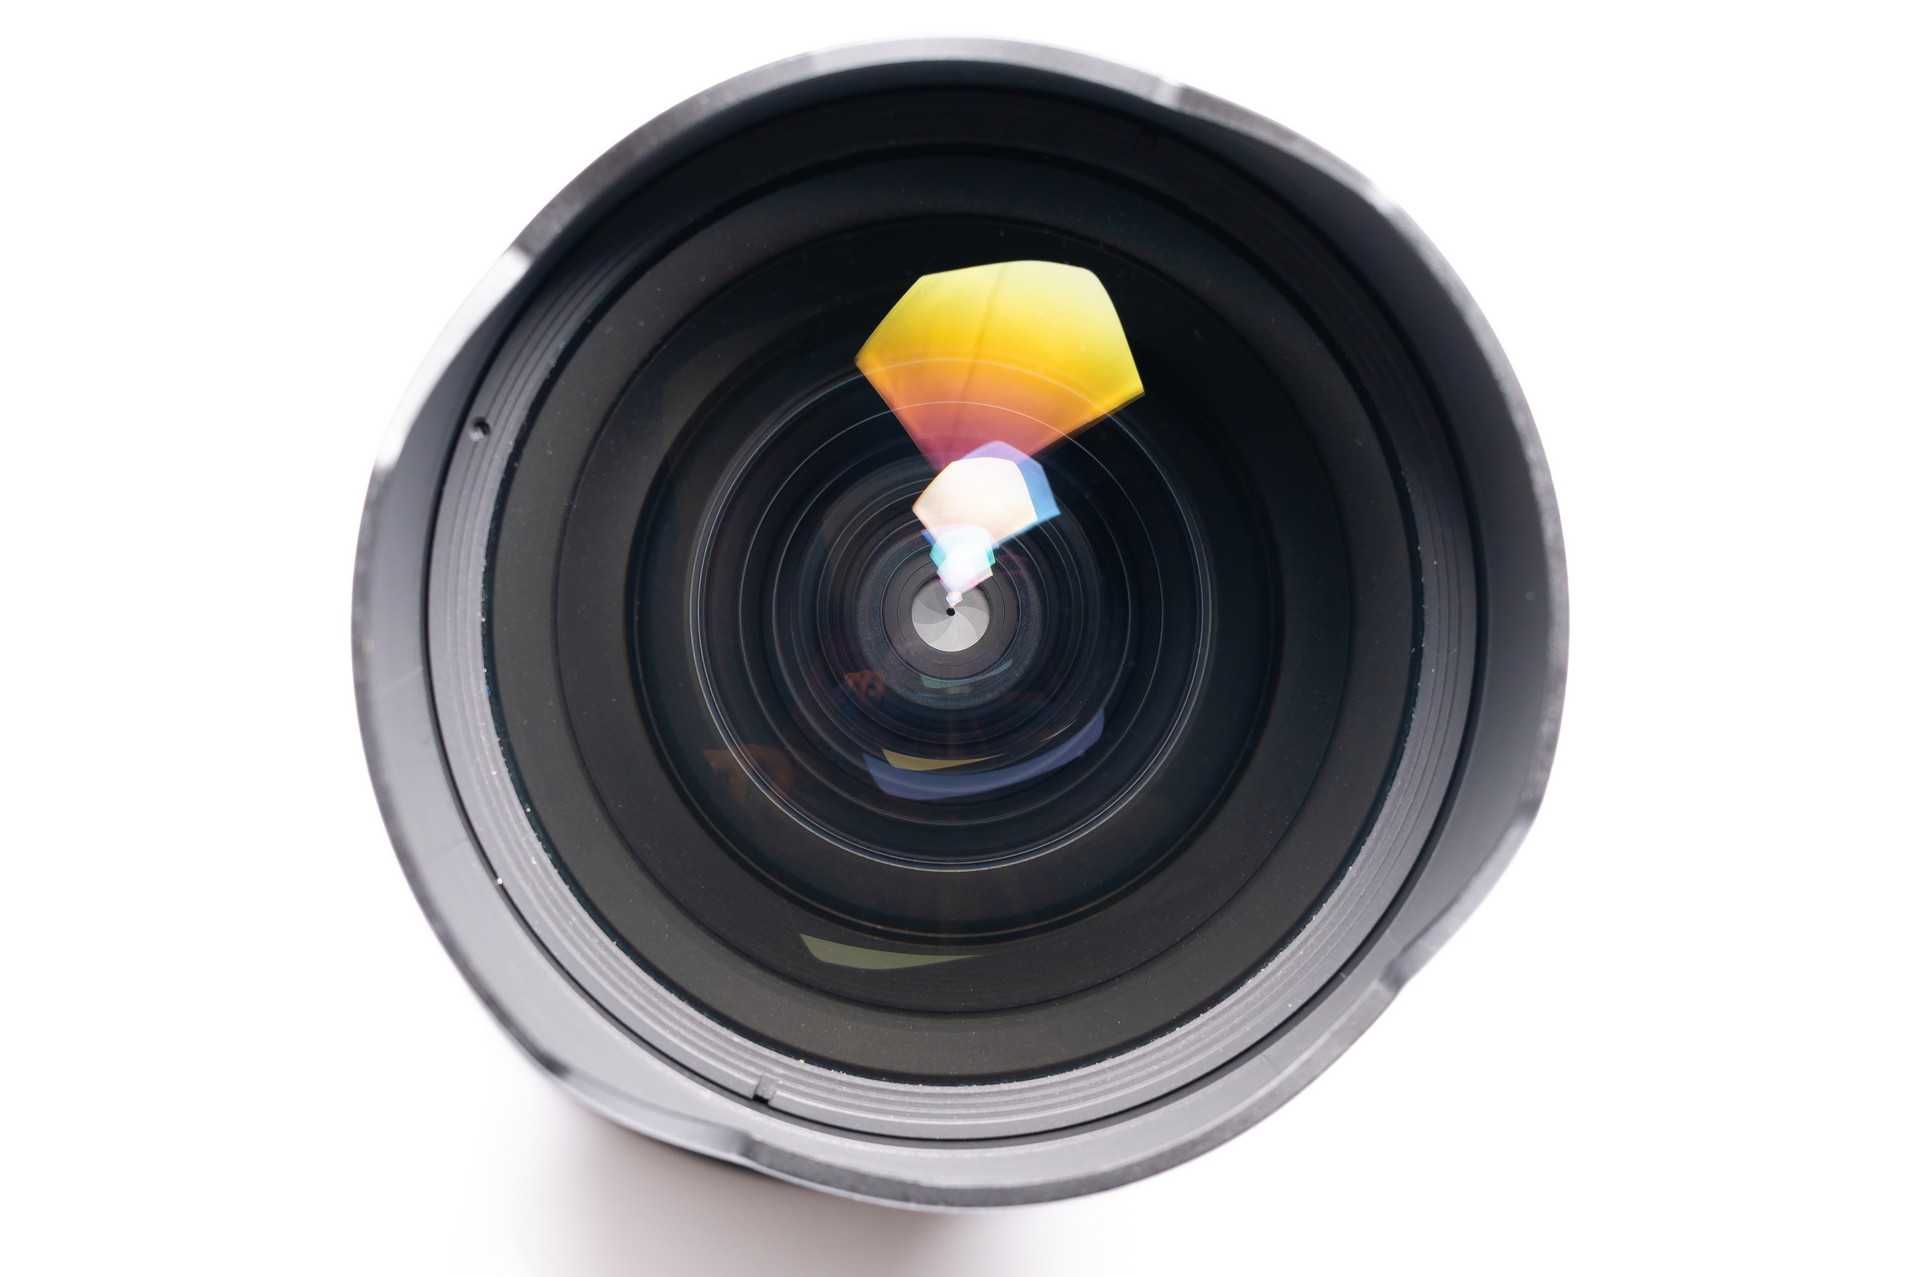 Obiektyw Nikon 14-24 mm f/2.8 G ED AF-S  (Wystawiam Fakturę)